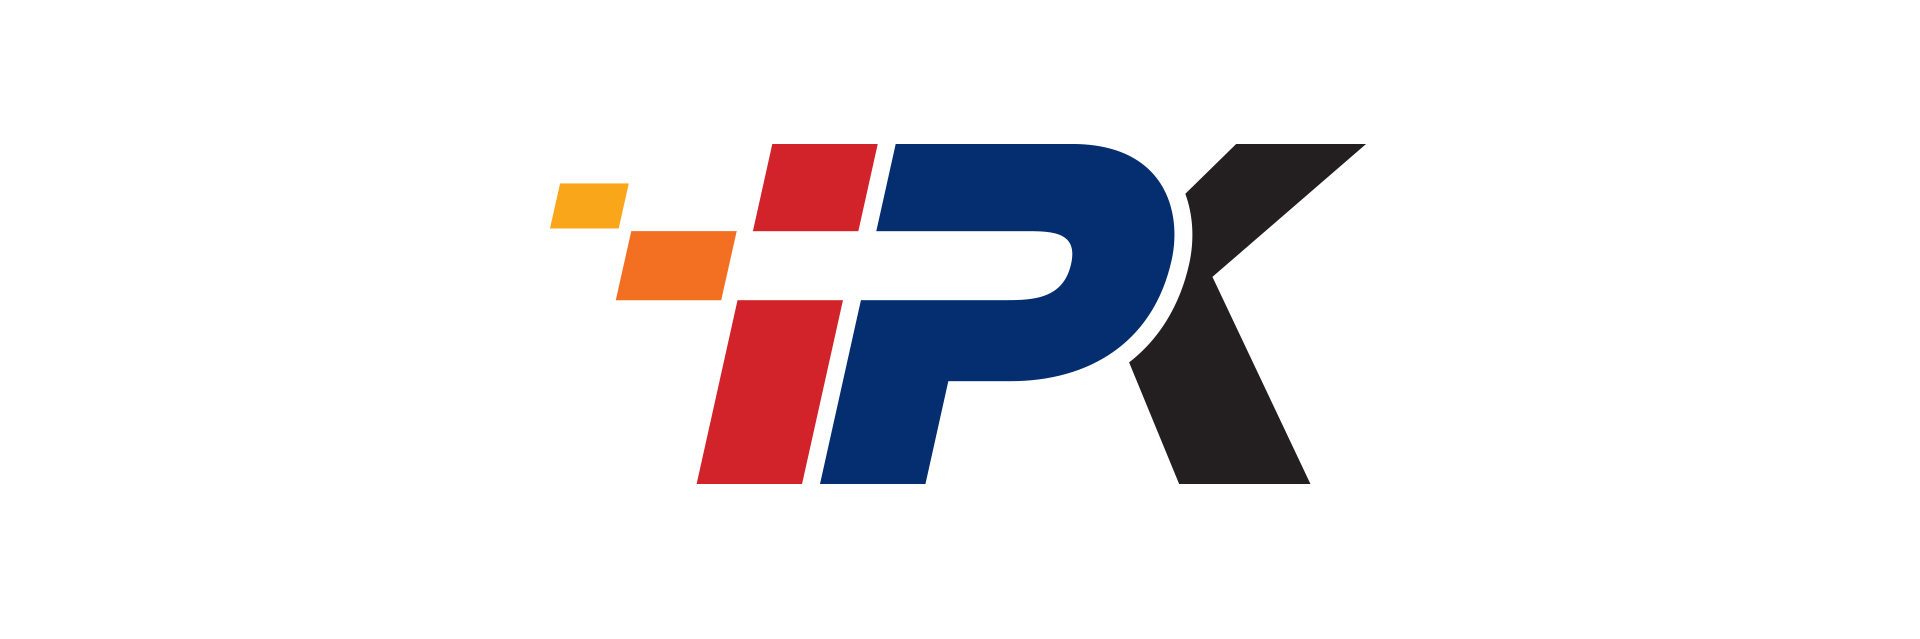 The international season begins for the new official IPK Team | OK1 Kart